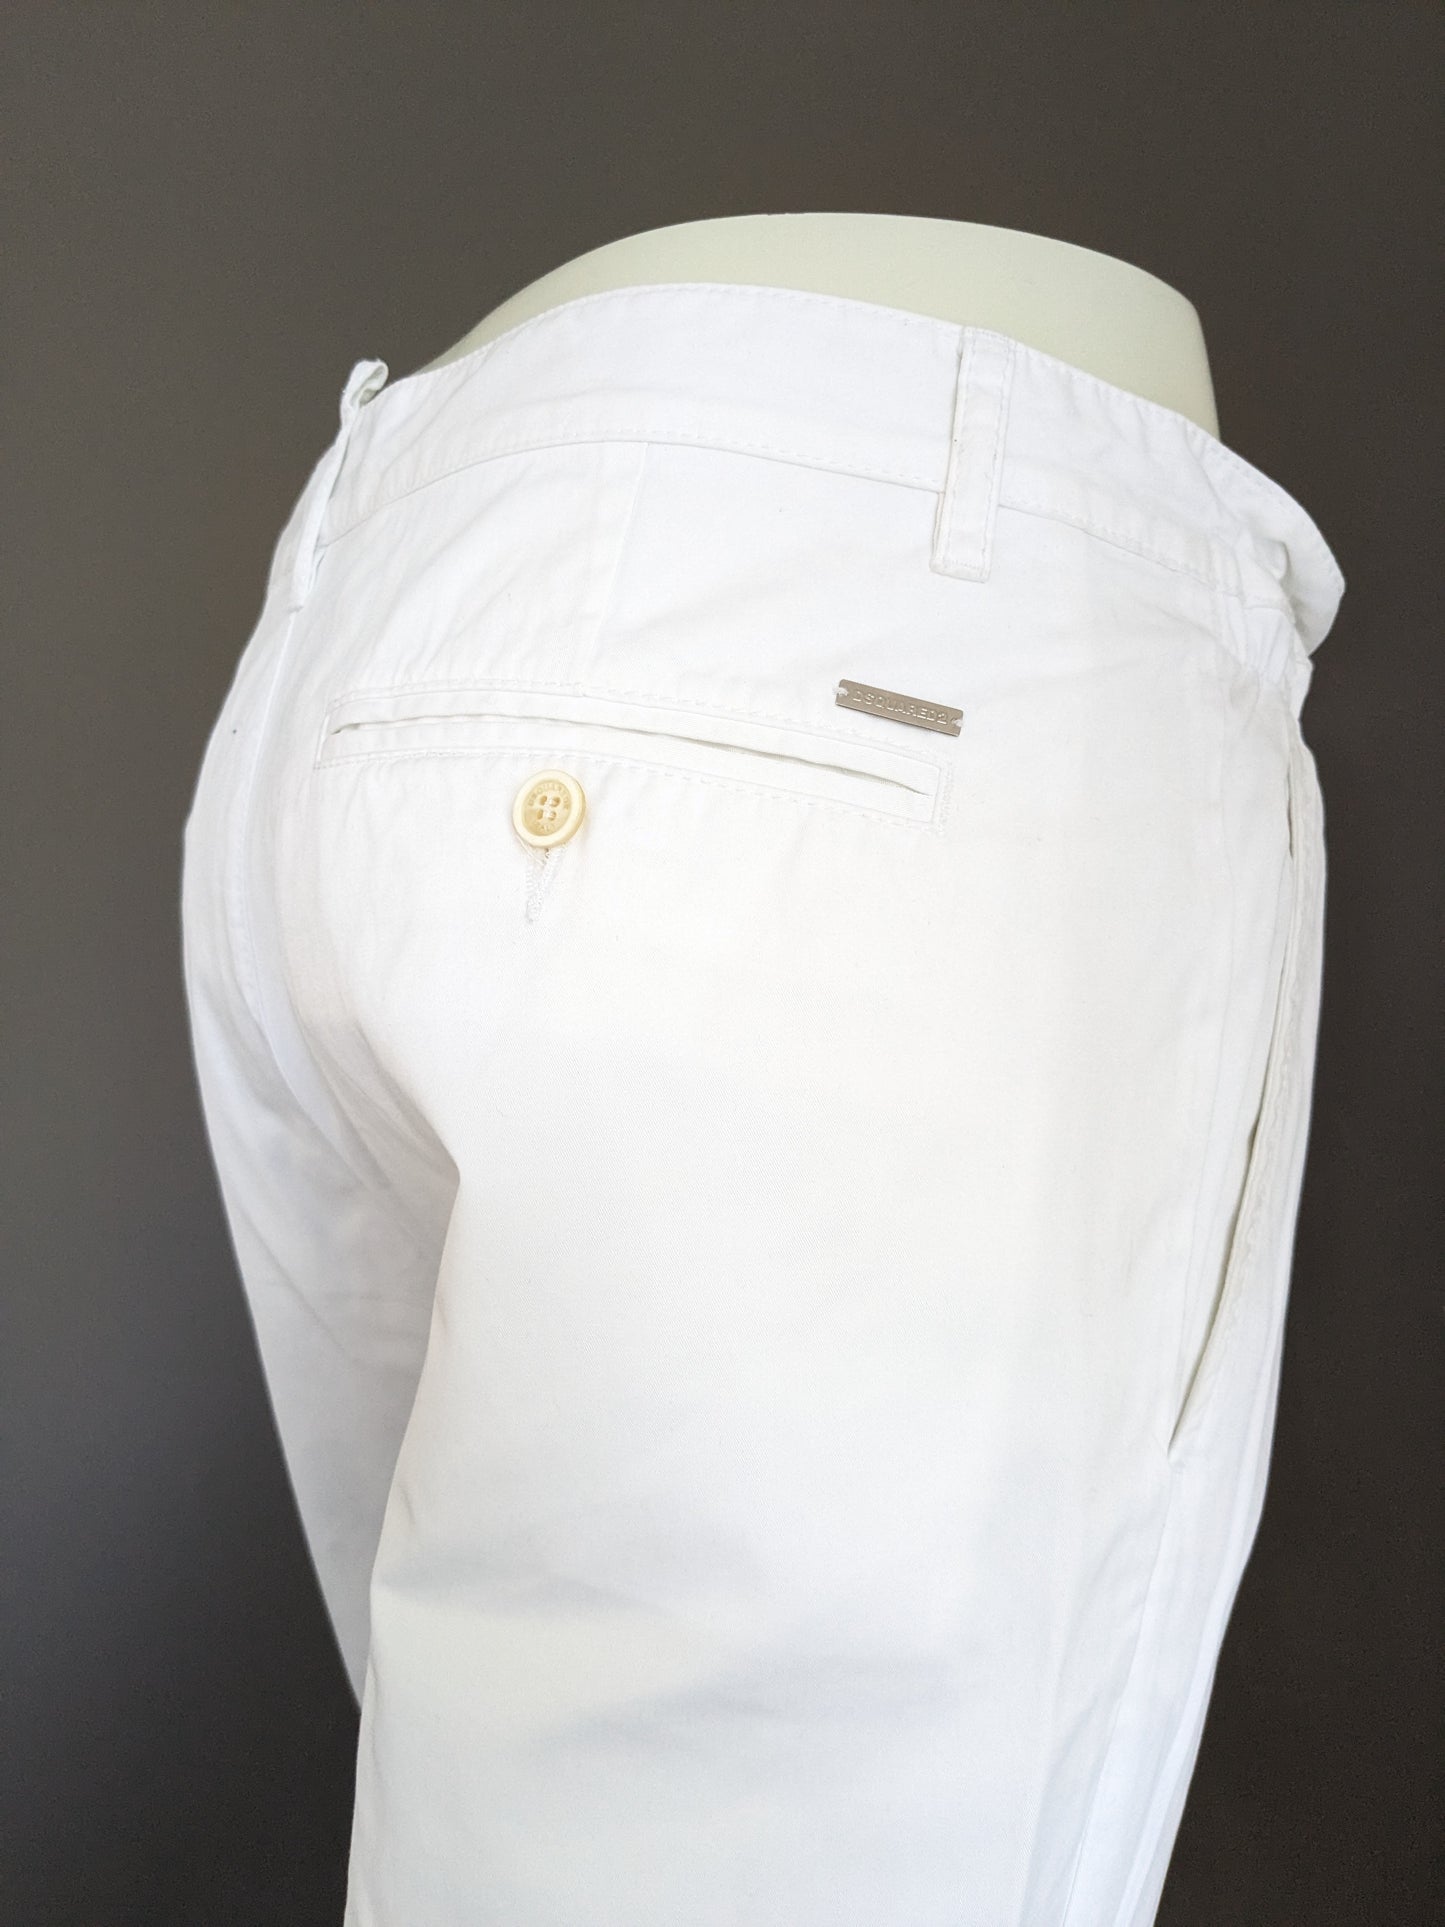 Hose von Dsquared2 mit elastischem Bund. Weiß gefärbt. Größe 48 / M.